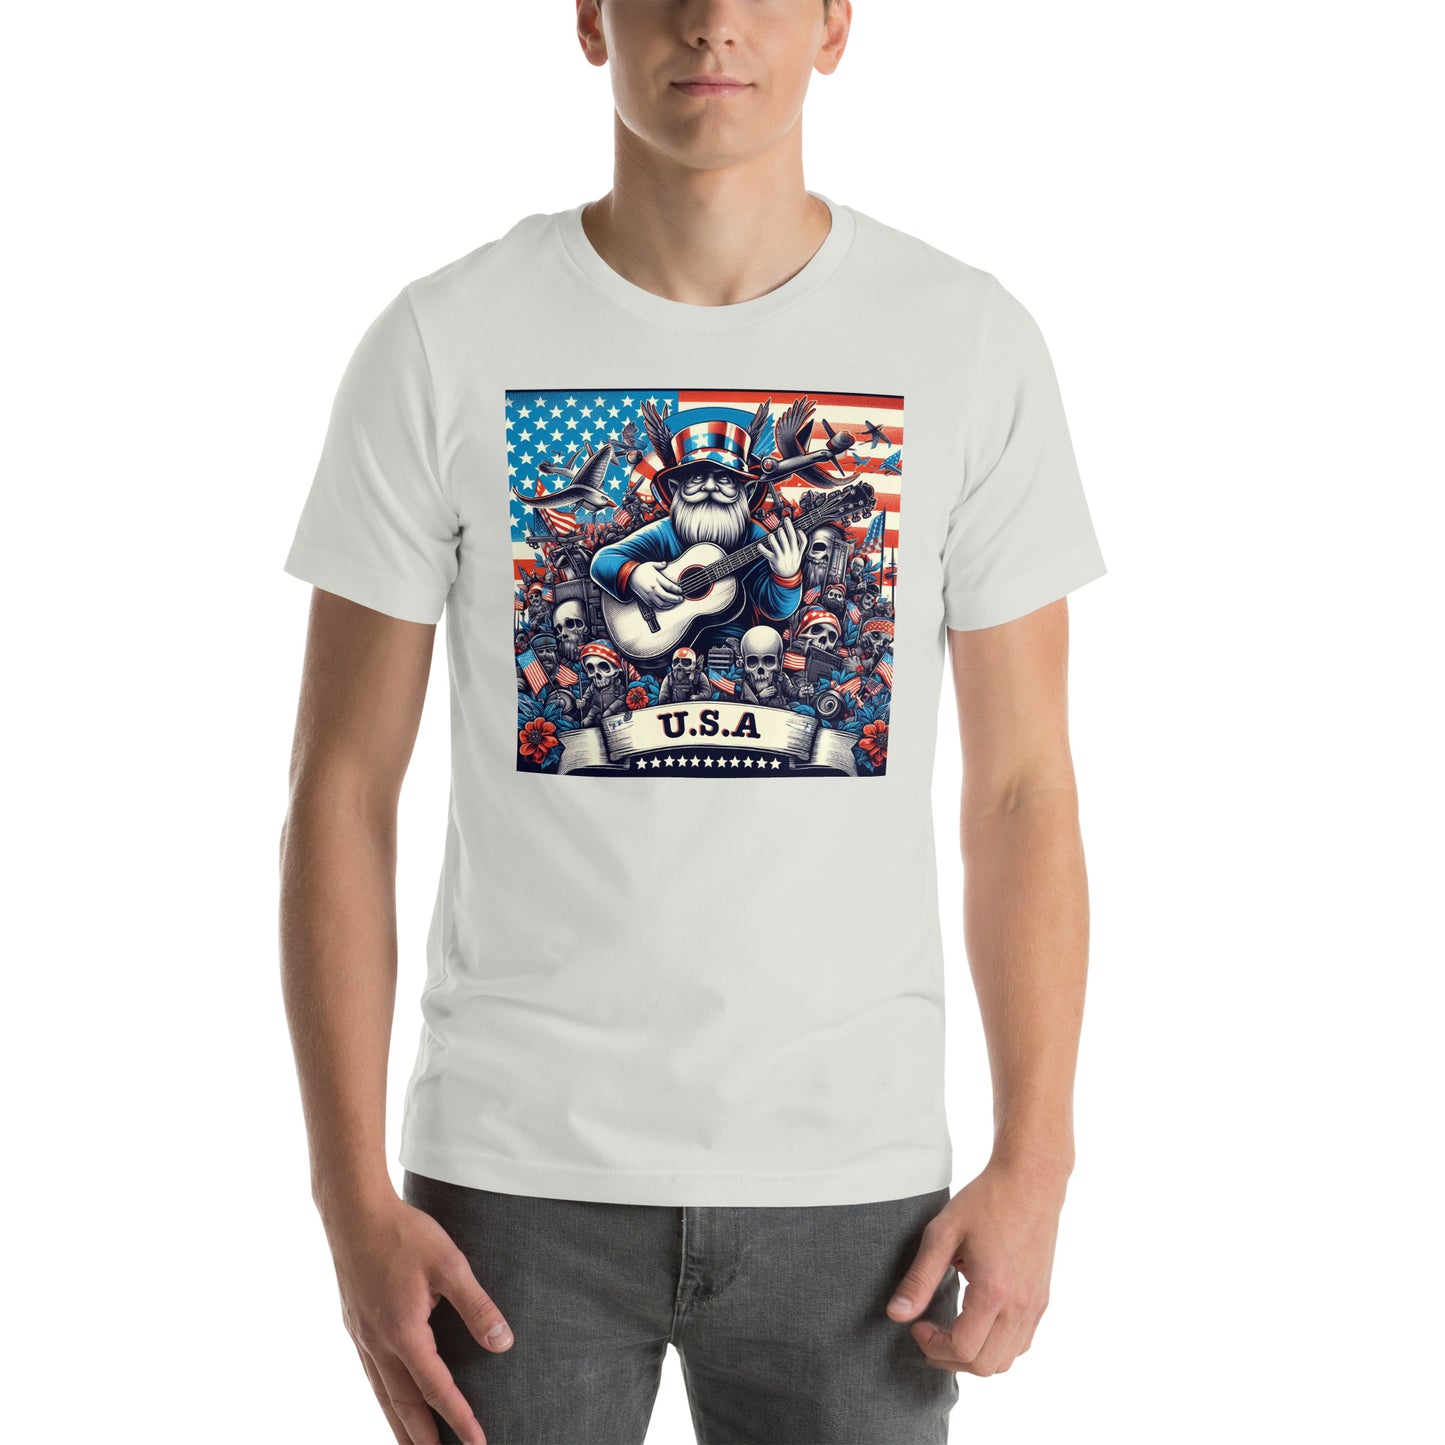 U.S.A Unisex t-shirt